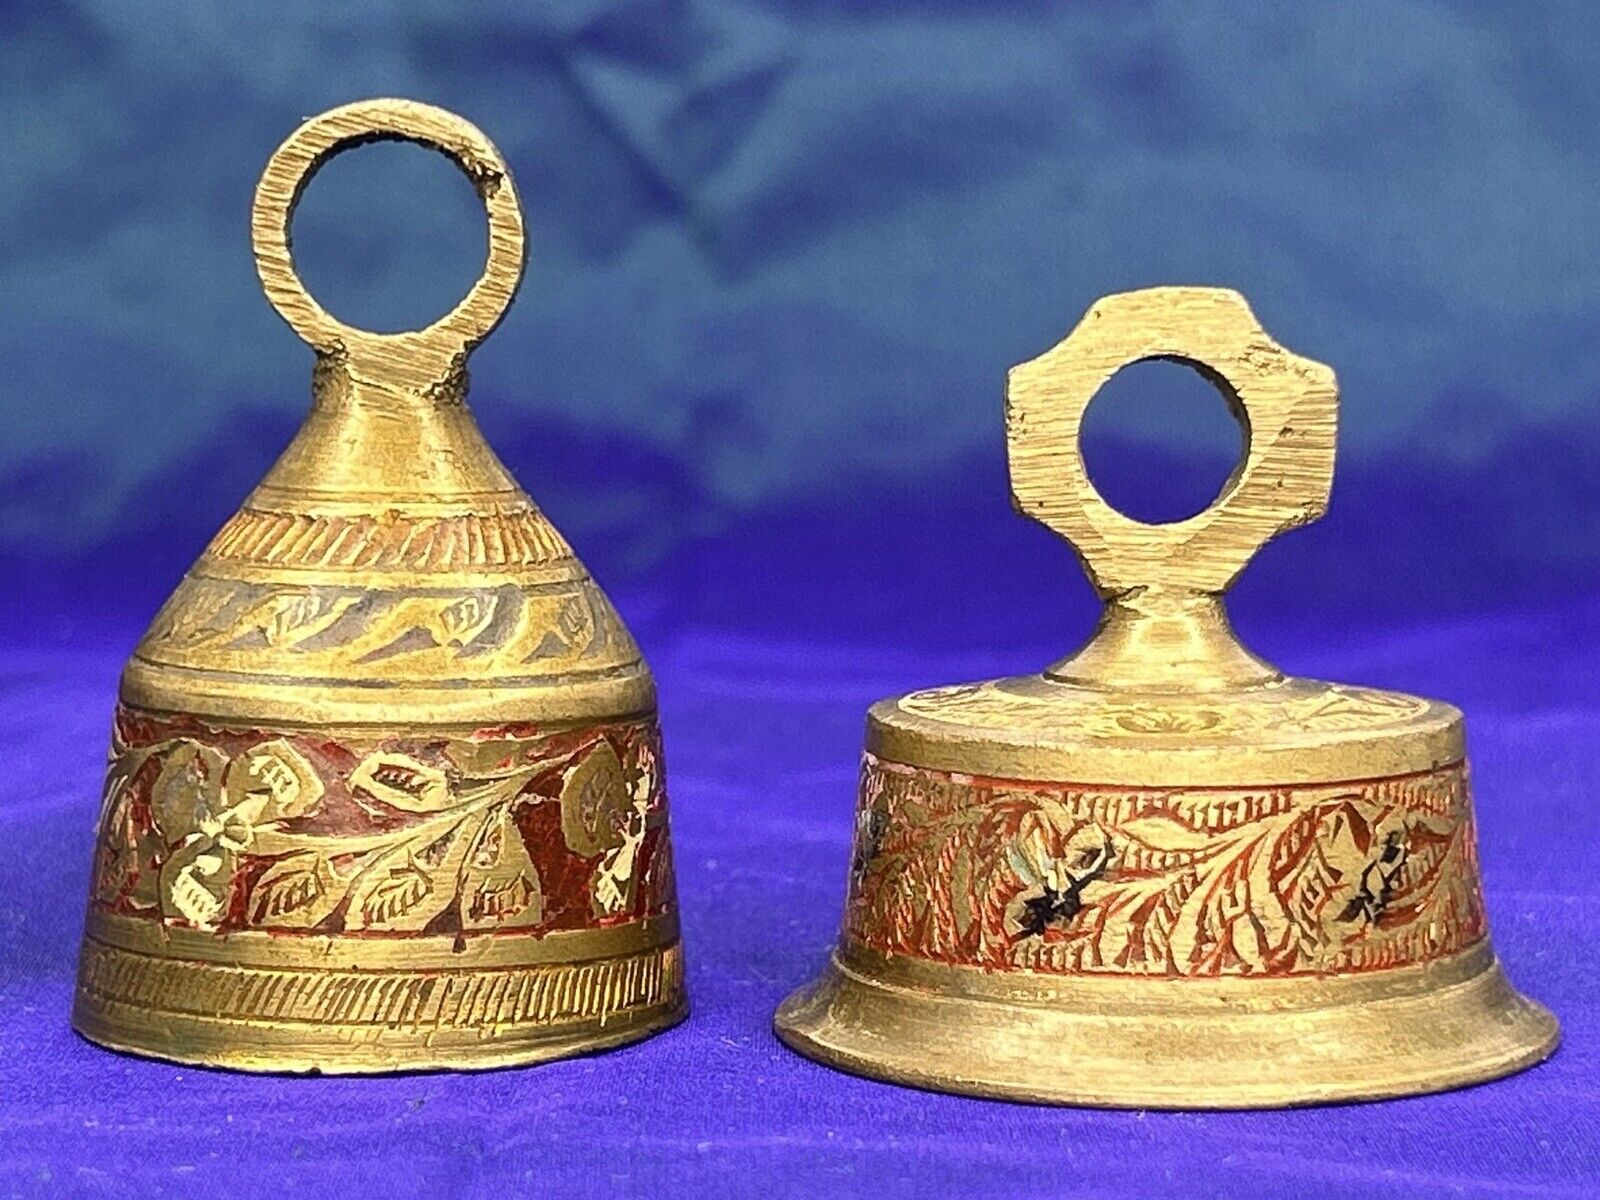 Vintage Lot of 2 Brass Bells - Ornate Etched Clover Leaf Design Gold & Red